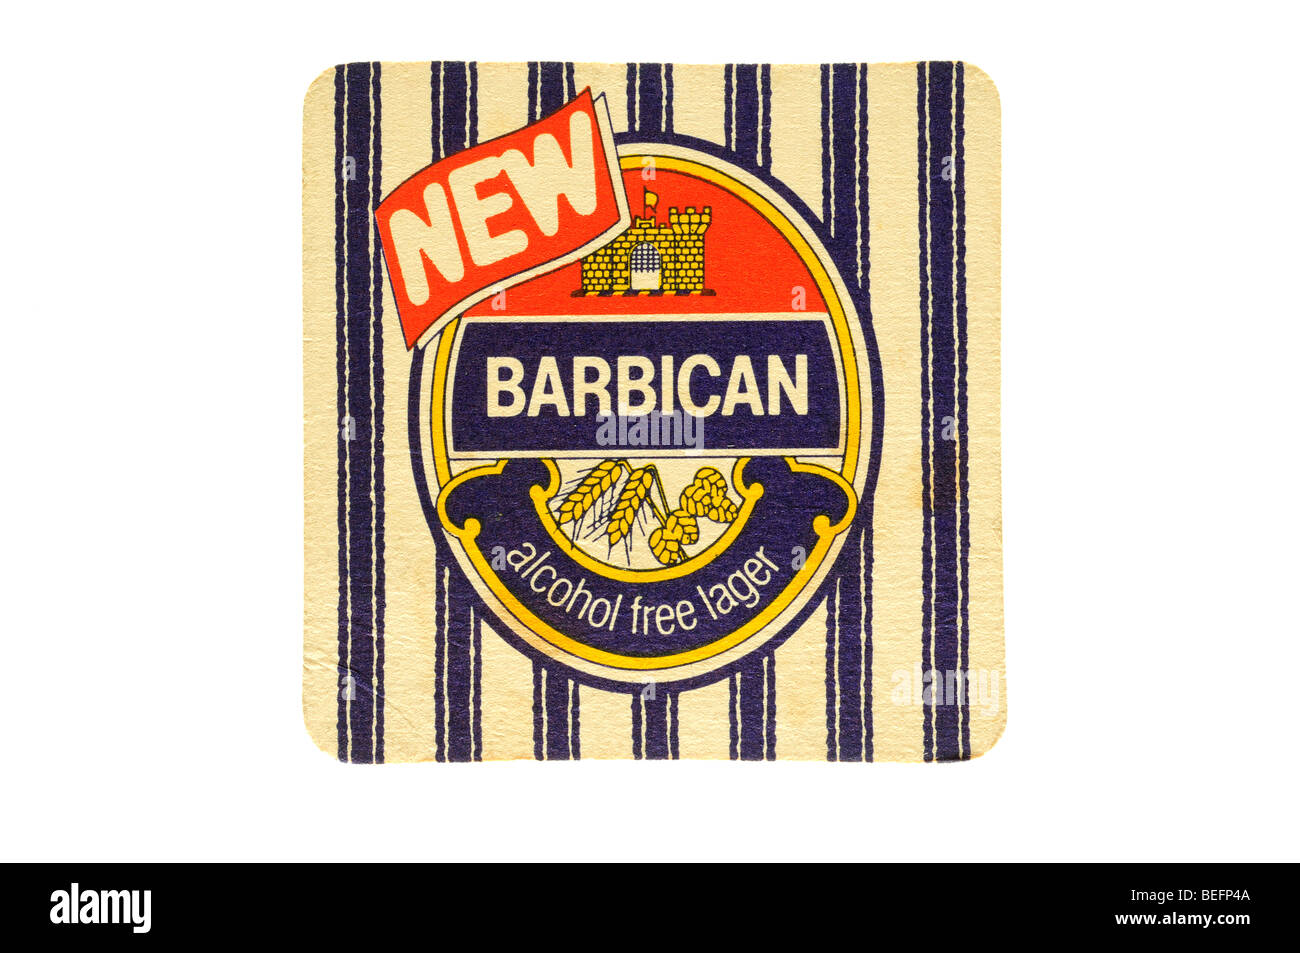 Barbican nouvelle lager sans alcool Banque D'Images